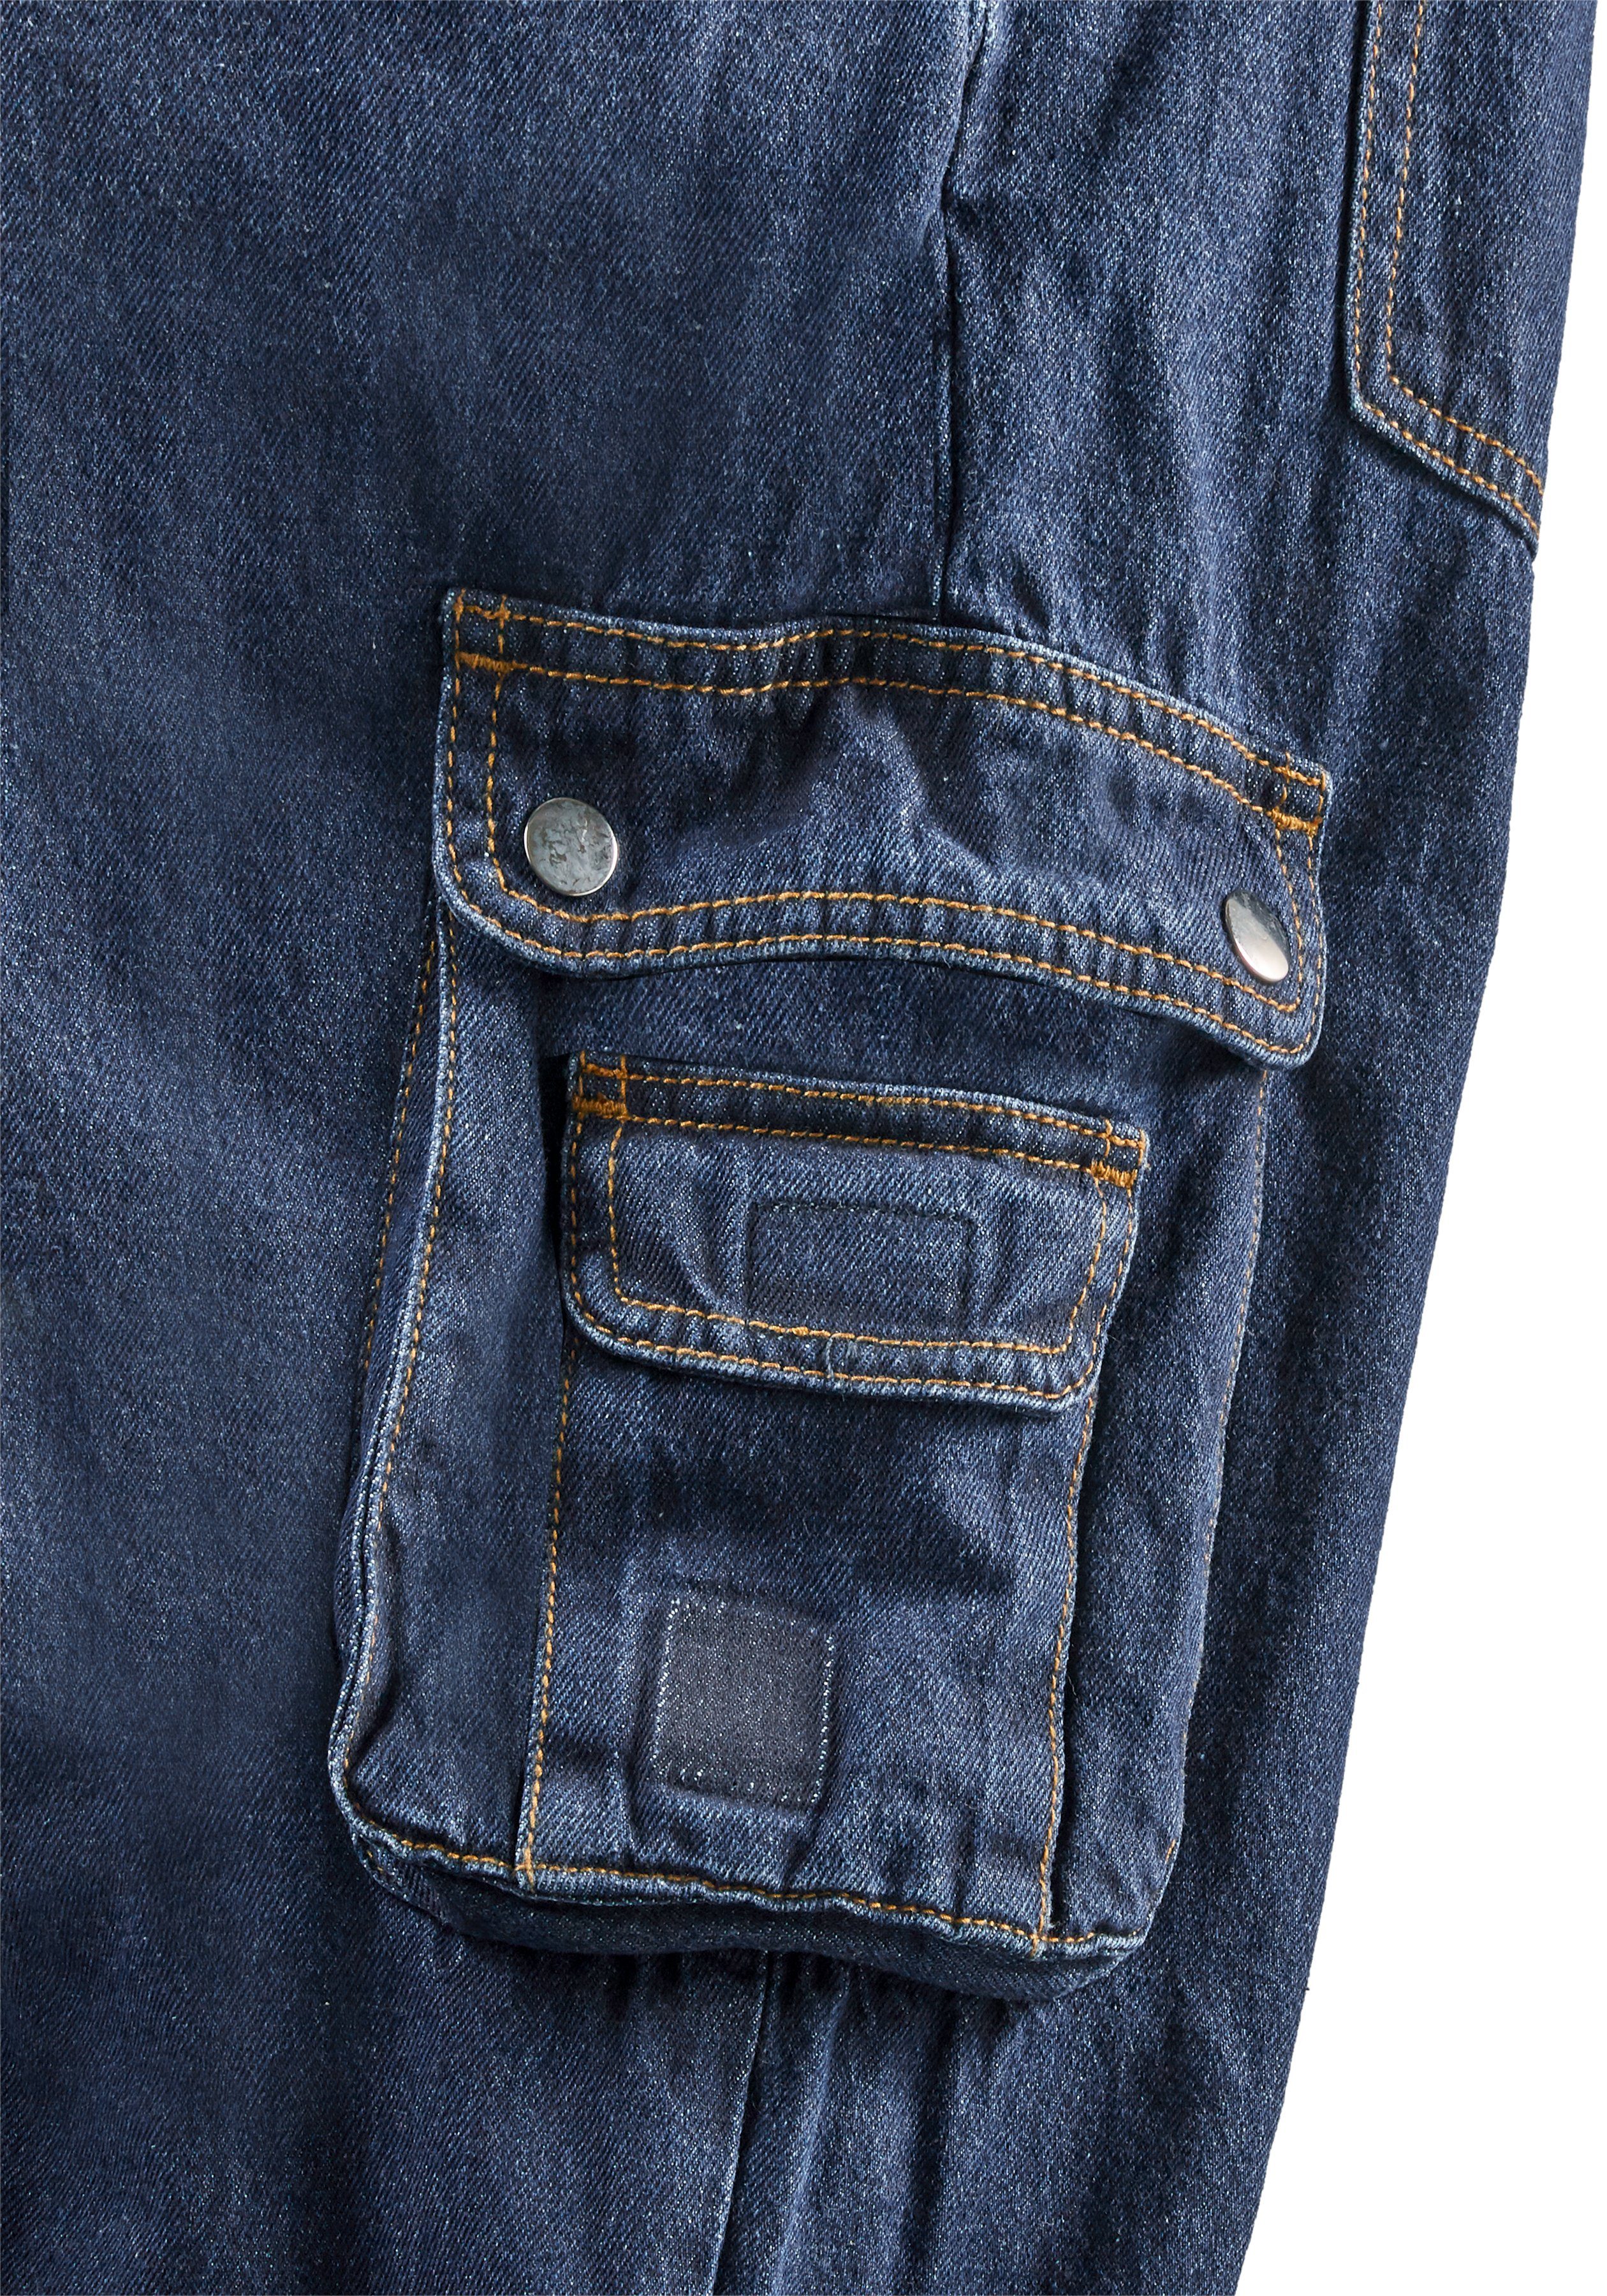 Northern Country Latzhose Worker Jeans 11 Baumwolle, und (aus langlebig dehnbarem comfort fit) Taschen, mit robuster strapazierfähig Jeansstoff, 100% Bund